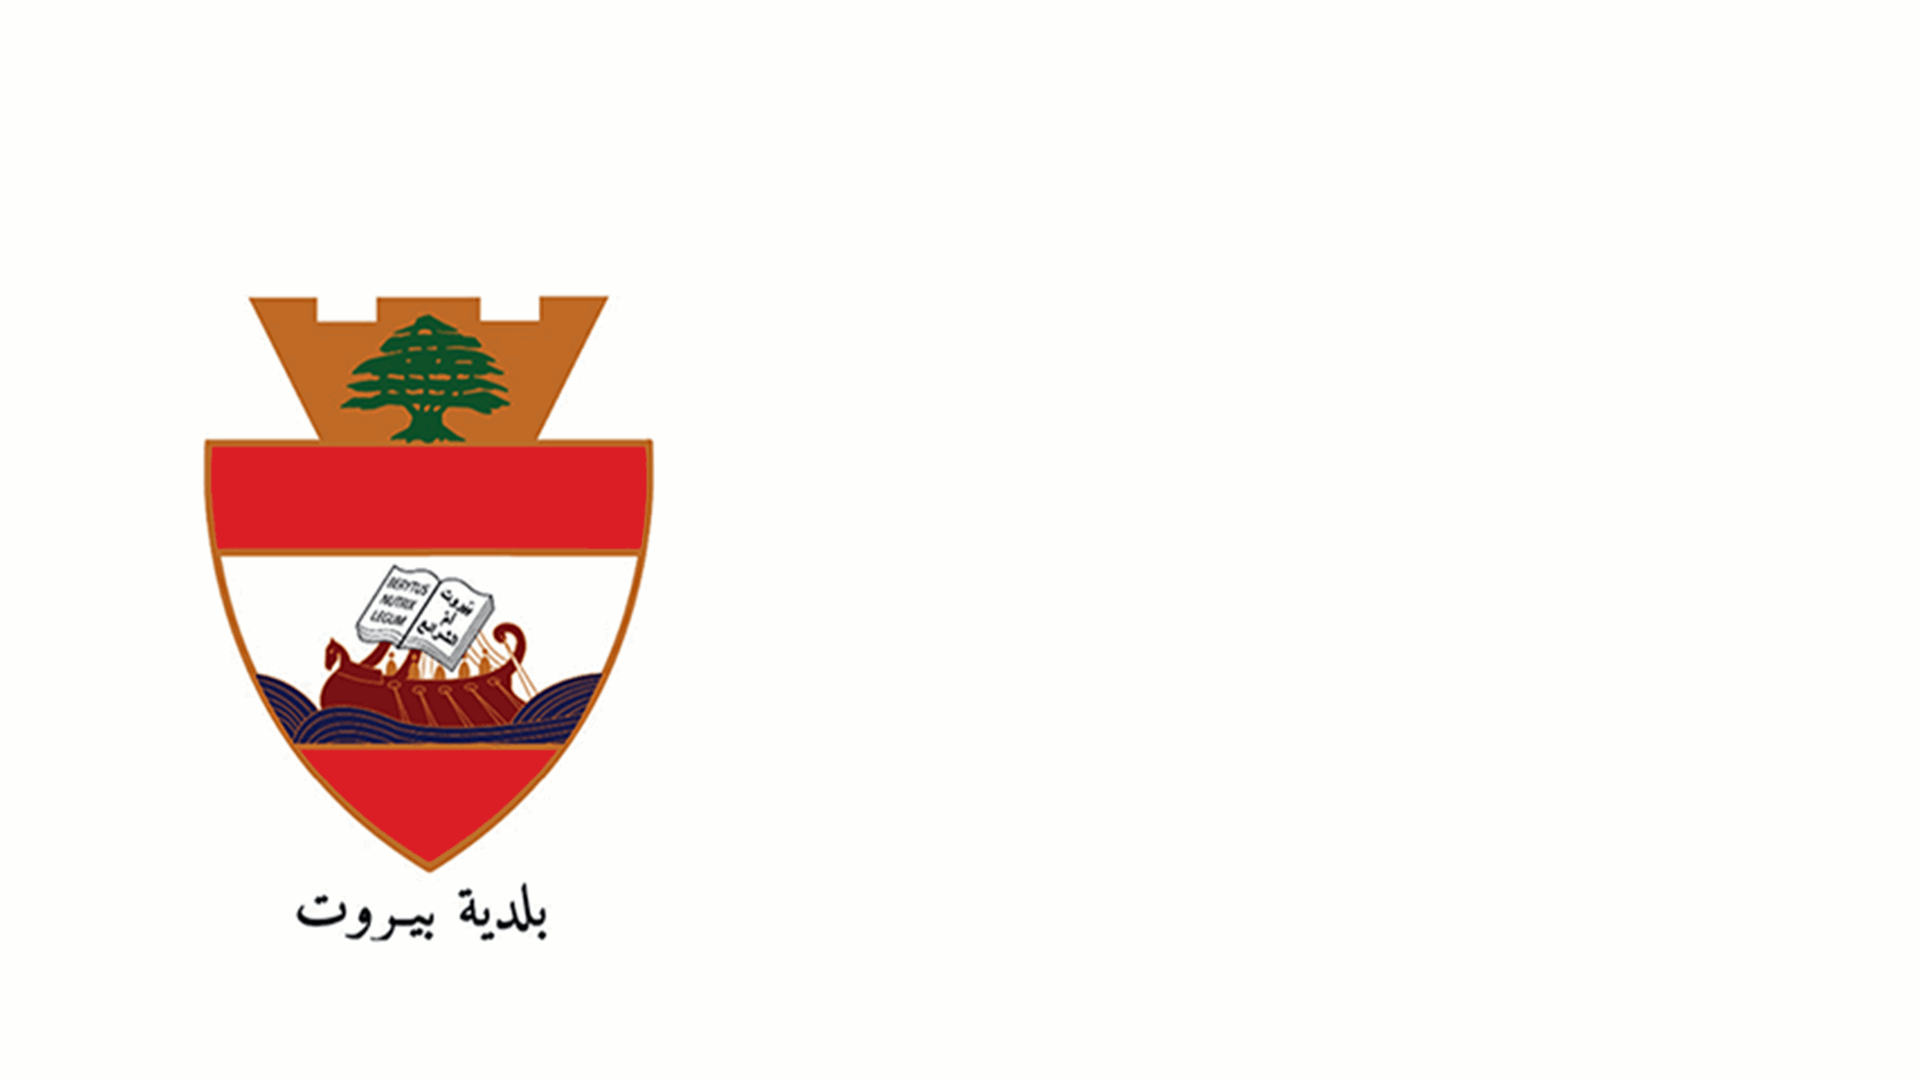 بلدية بيروت: للإبلاغ عن أي أضرار لحقت بالمنازل أو الأبنية في بيروت جراء الهزة الأرضية